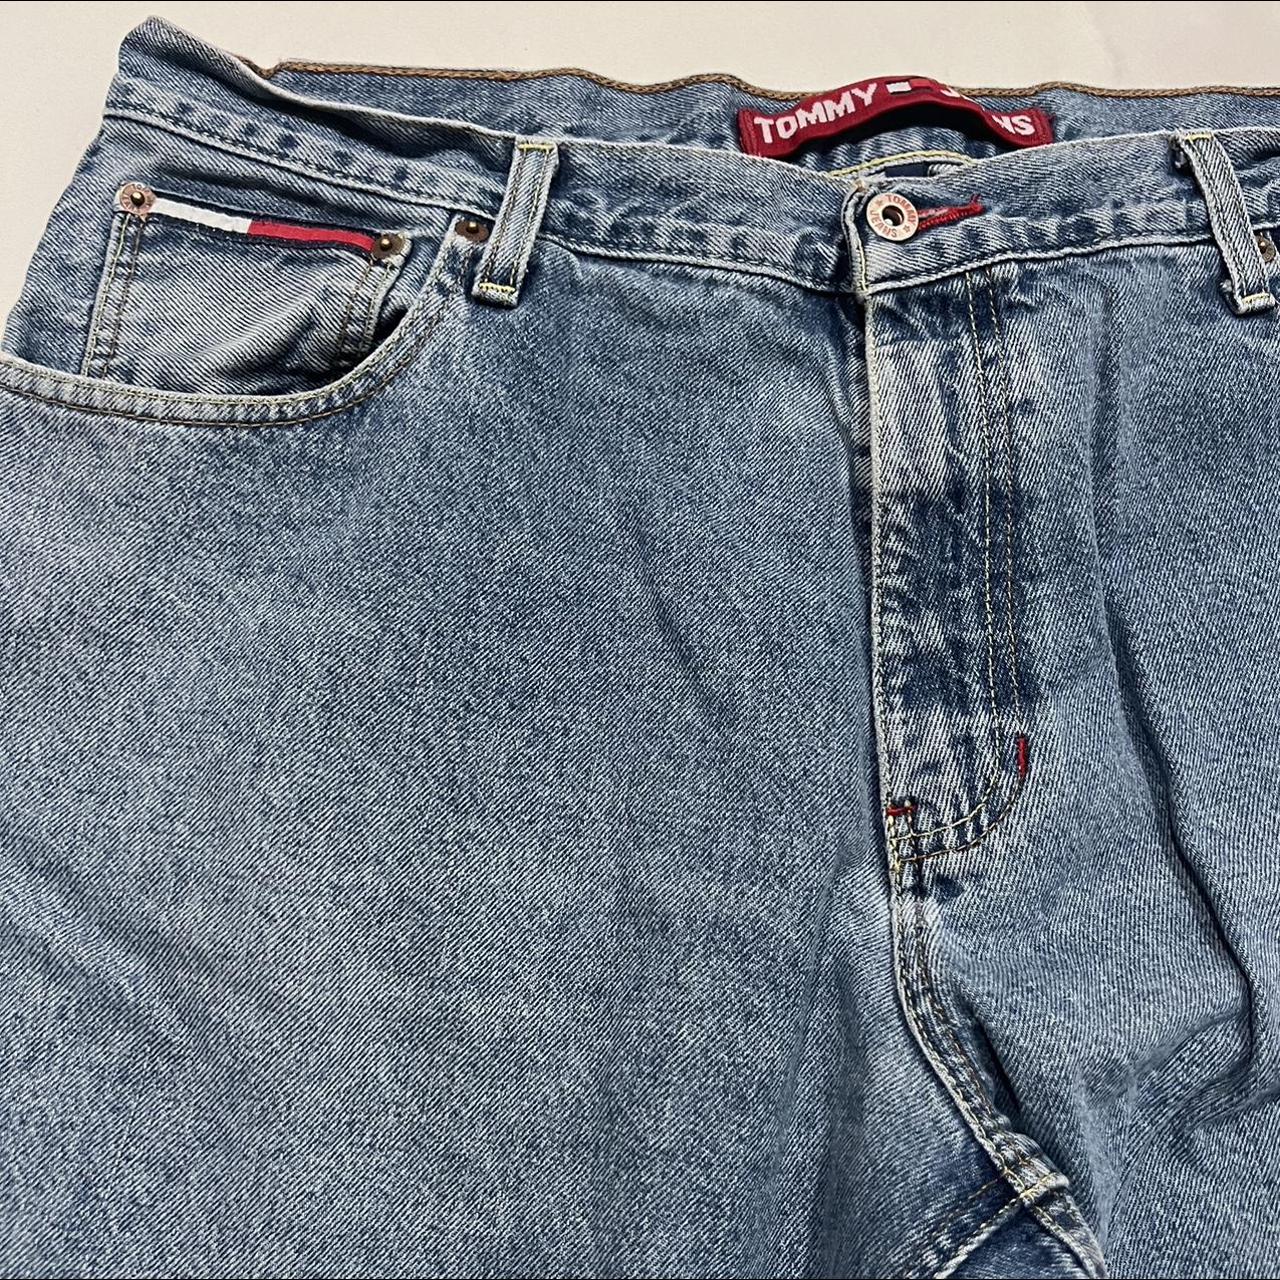 Tommy Hilfiger Men's Red and Blue Jeans | Depop